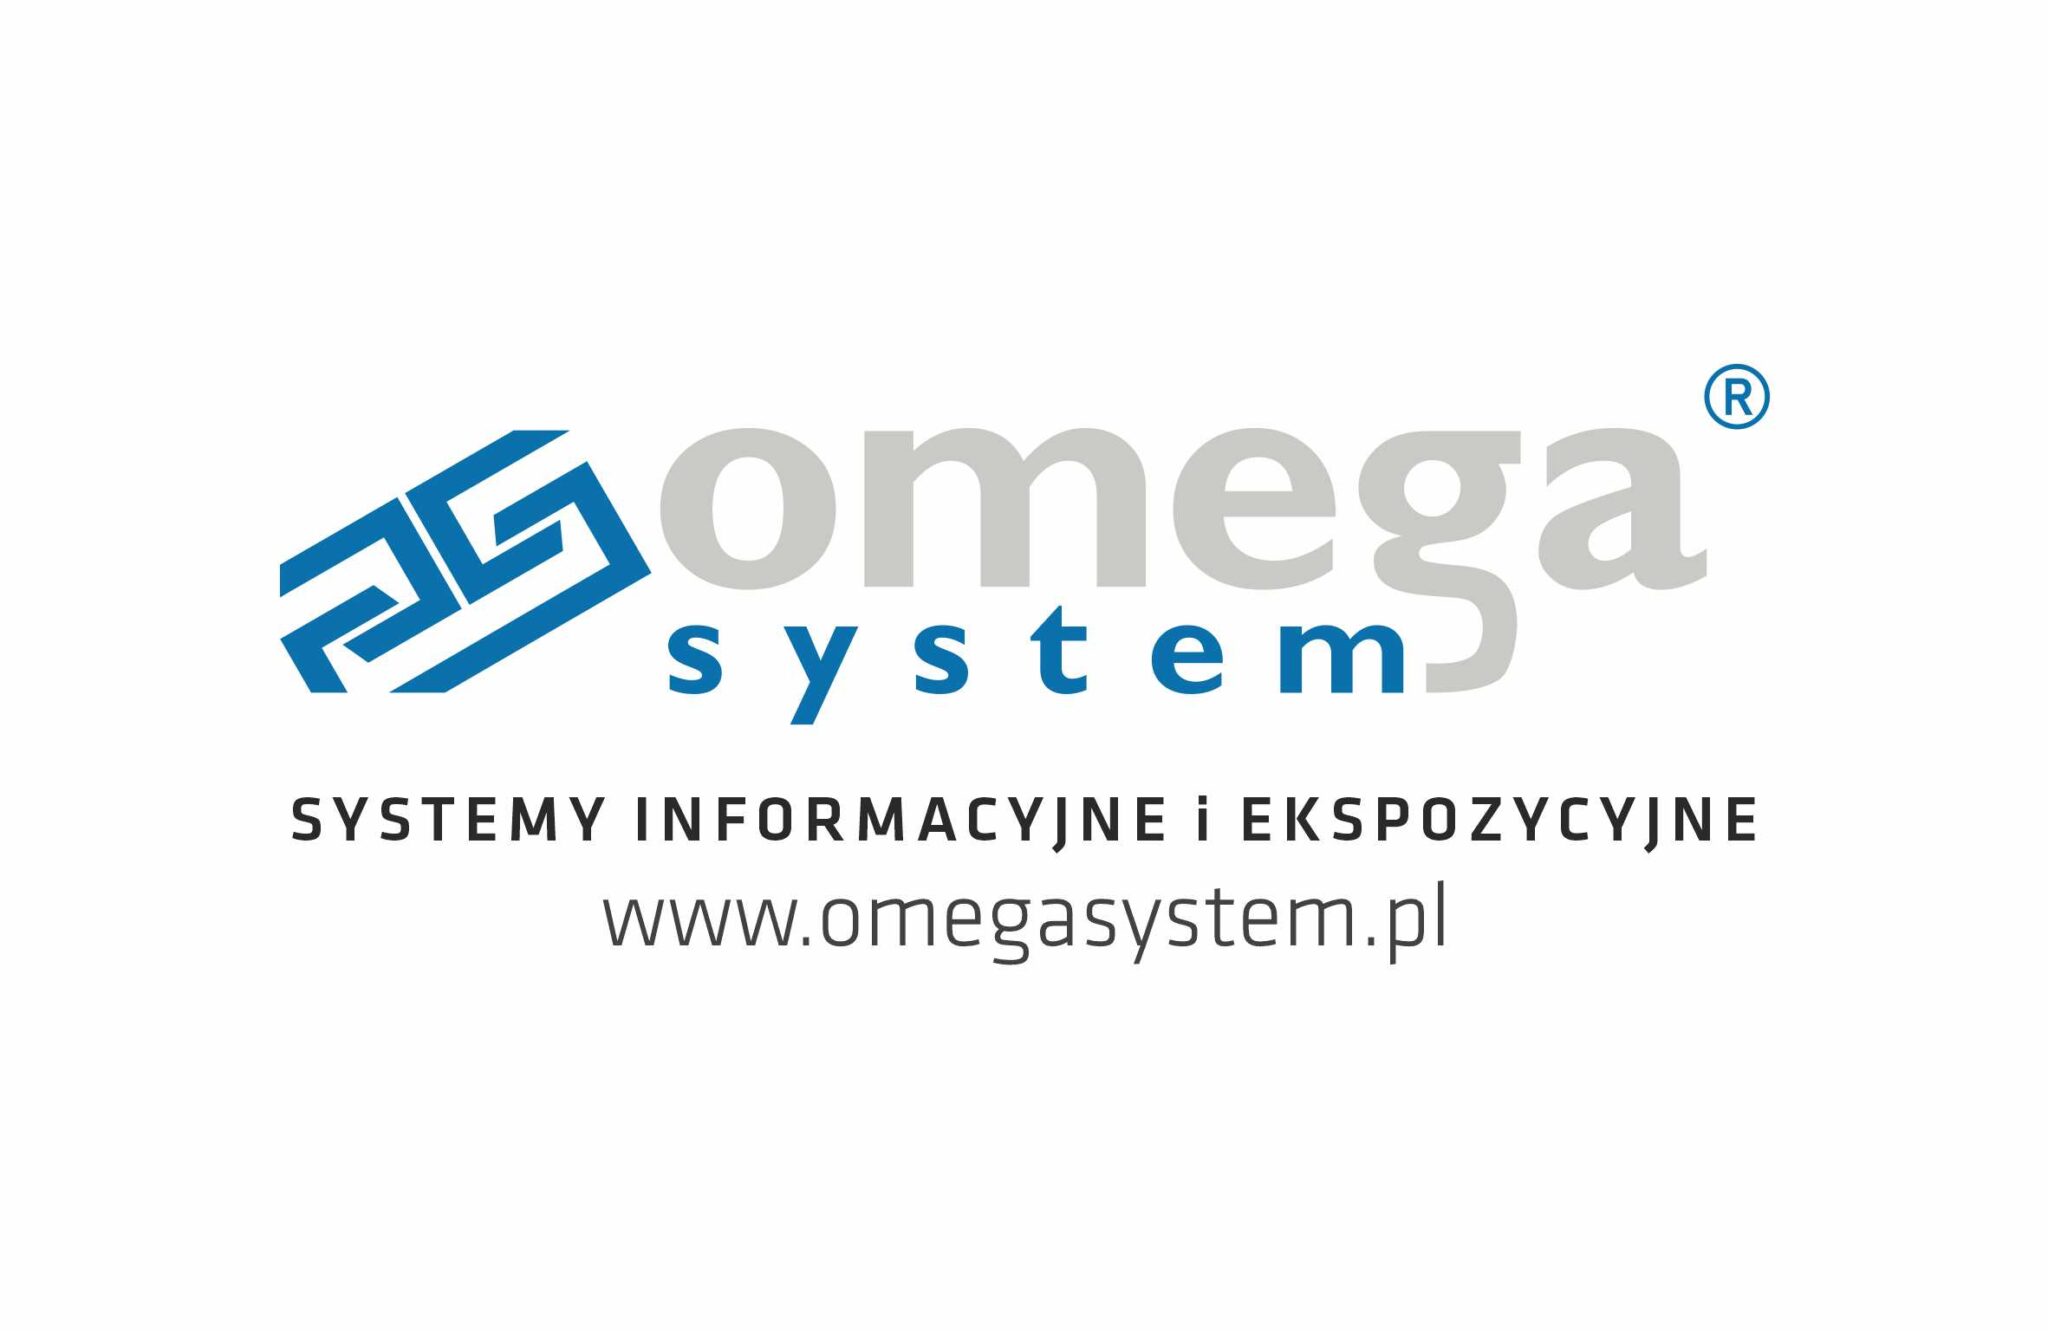 Omega system v2